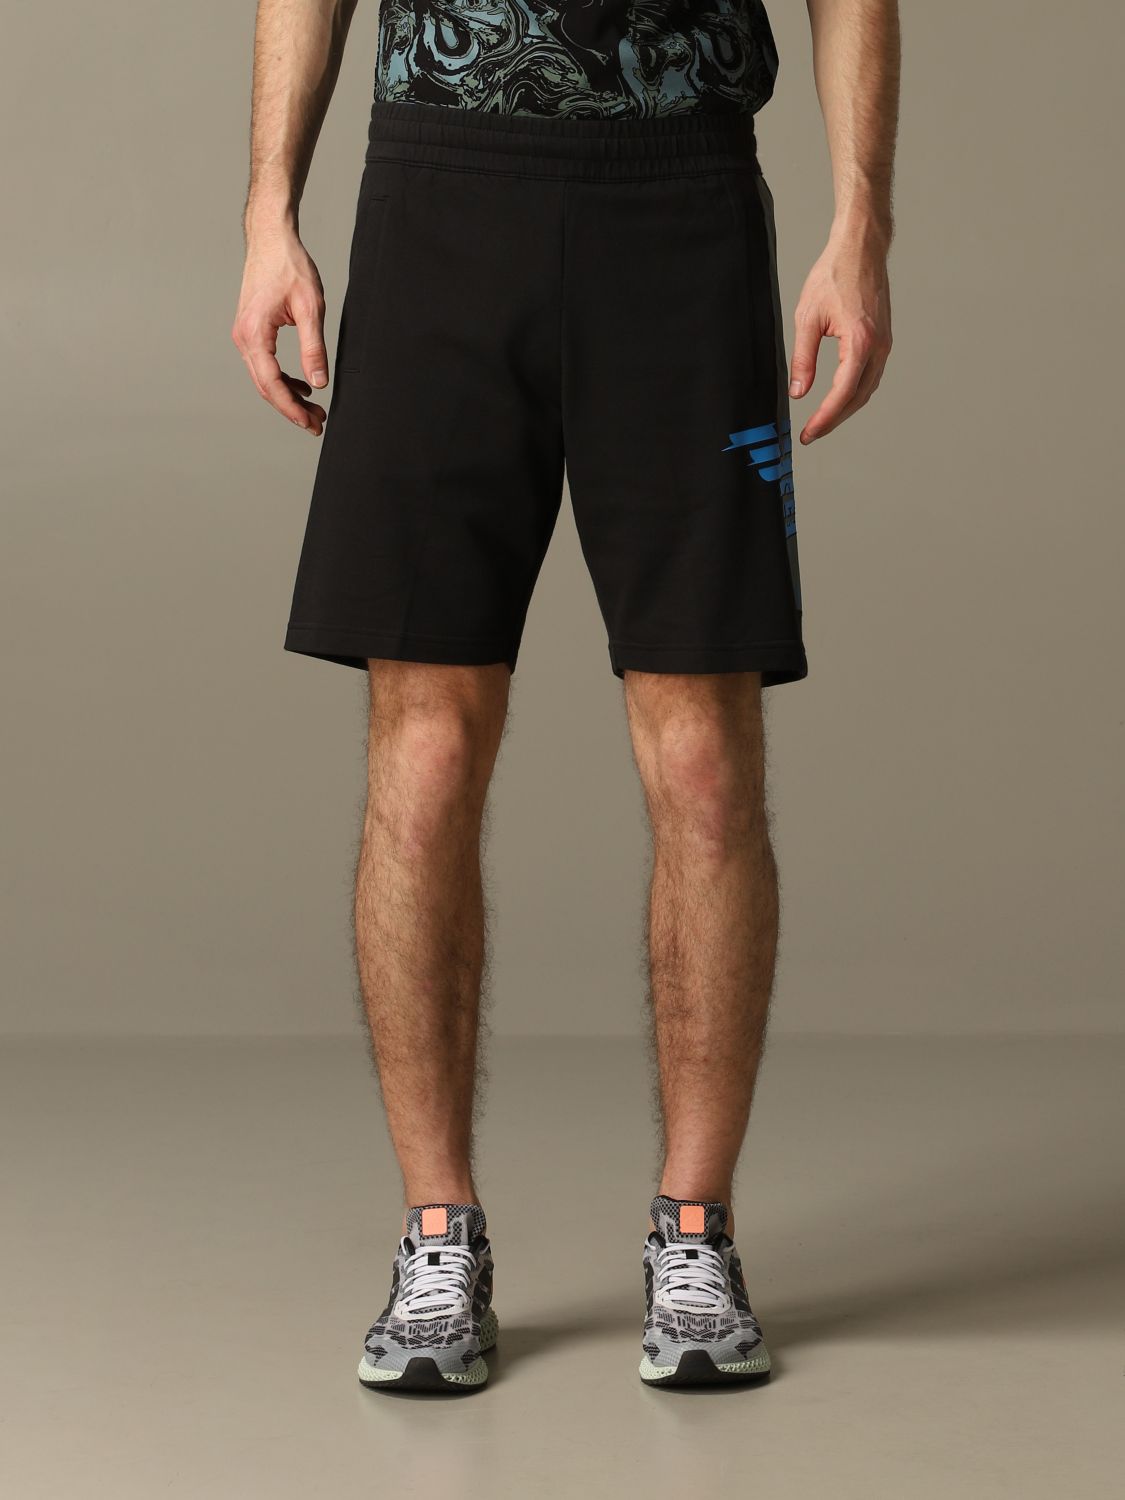 ea7 mens shorts